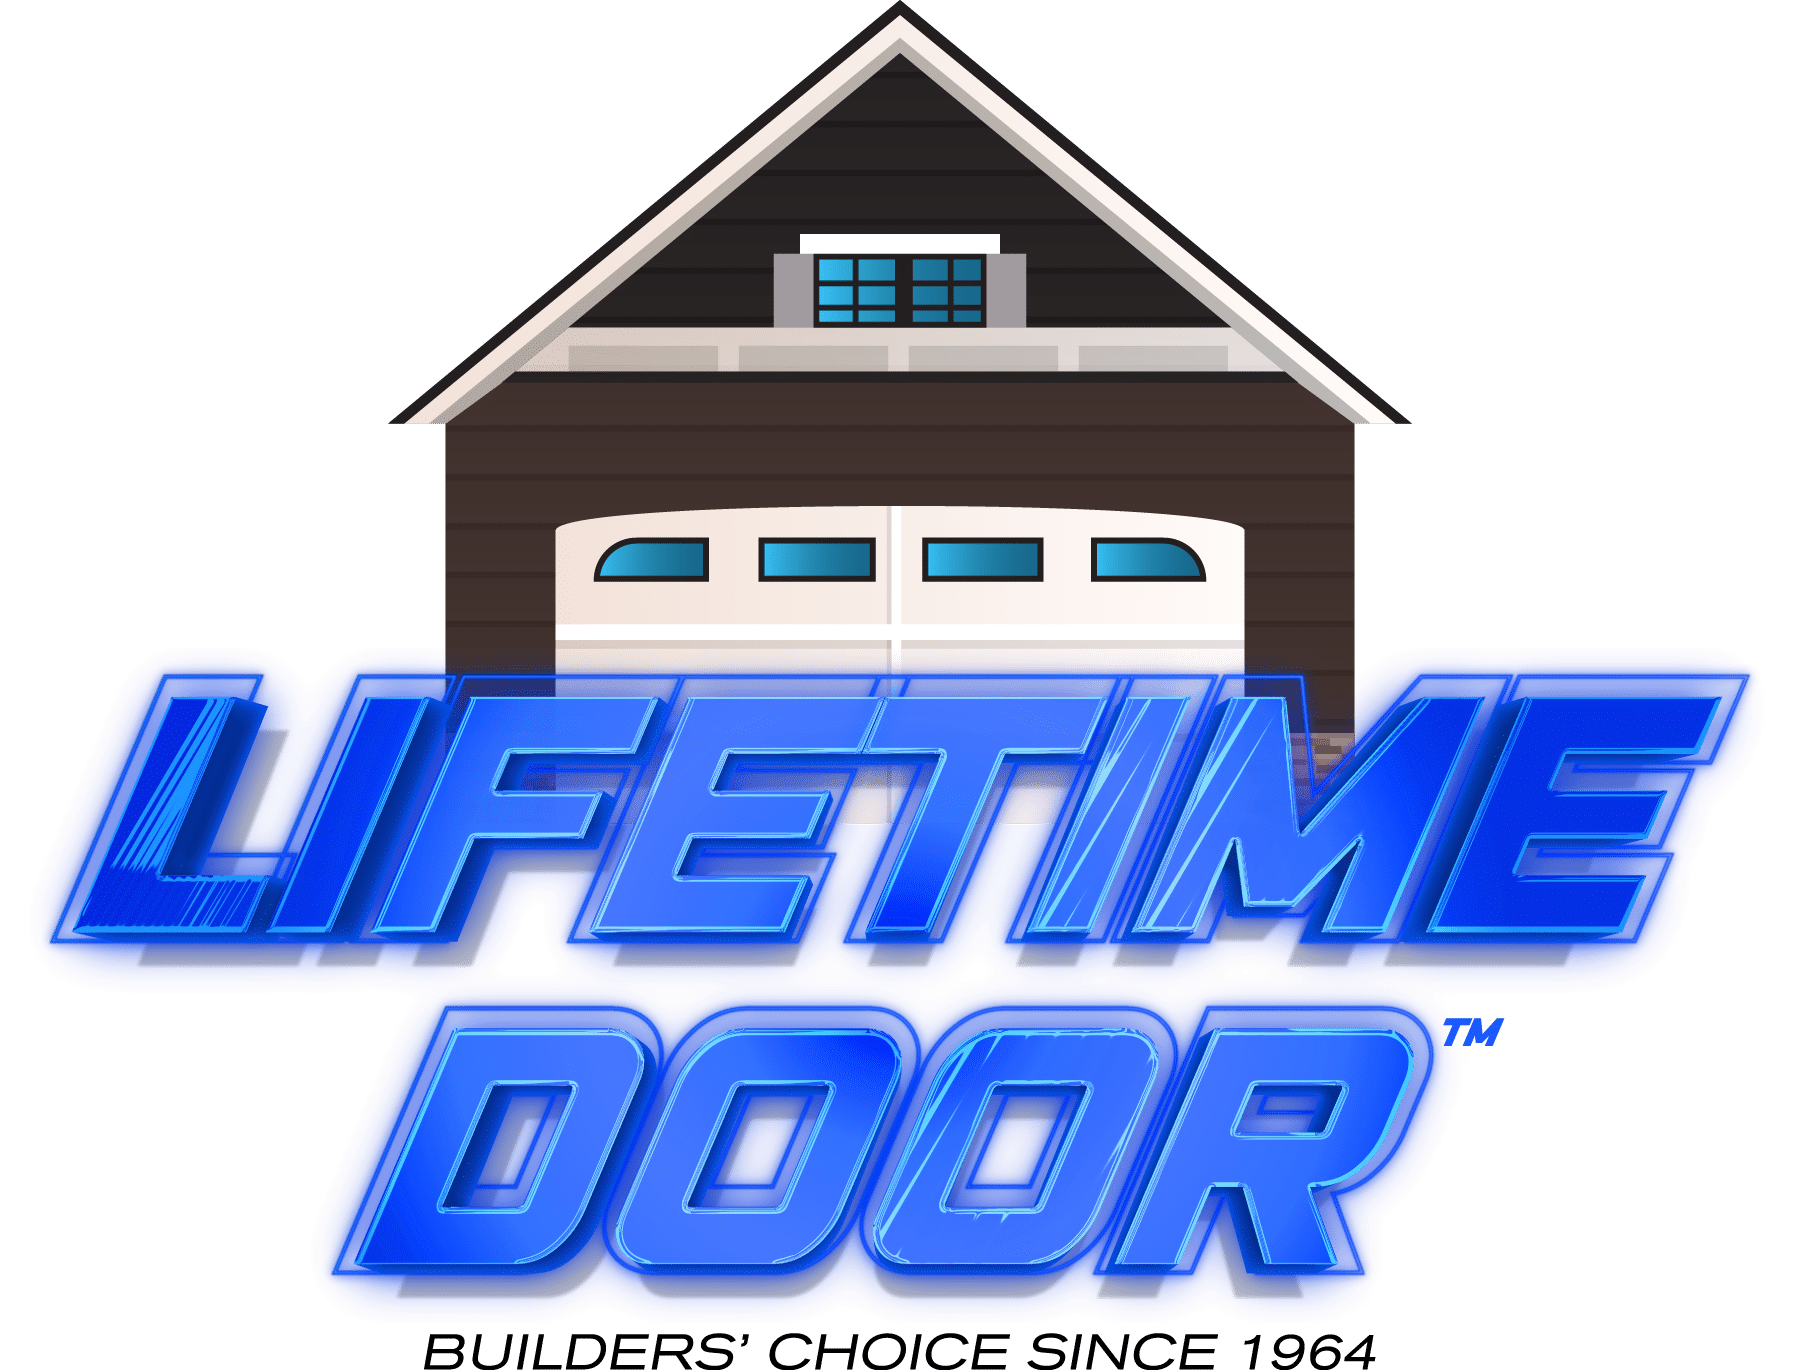 Lifetime Door Company